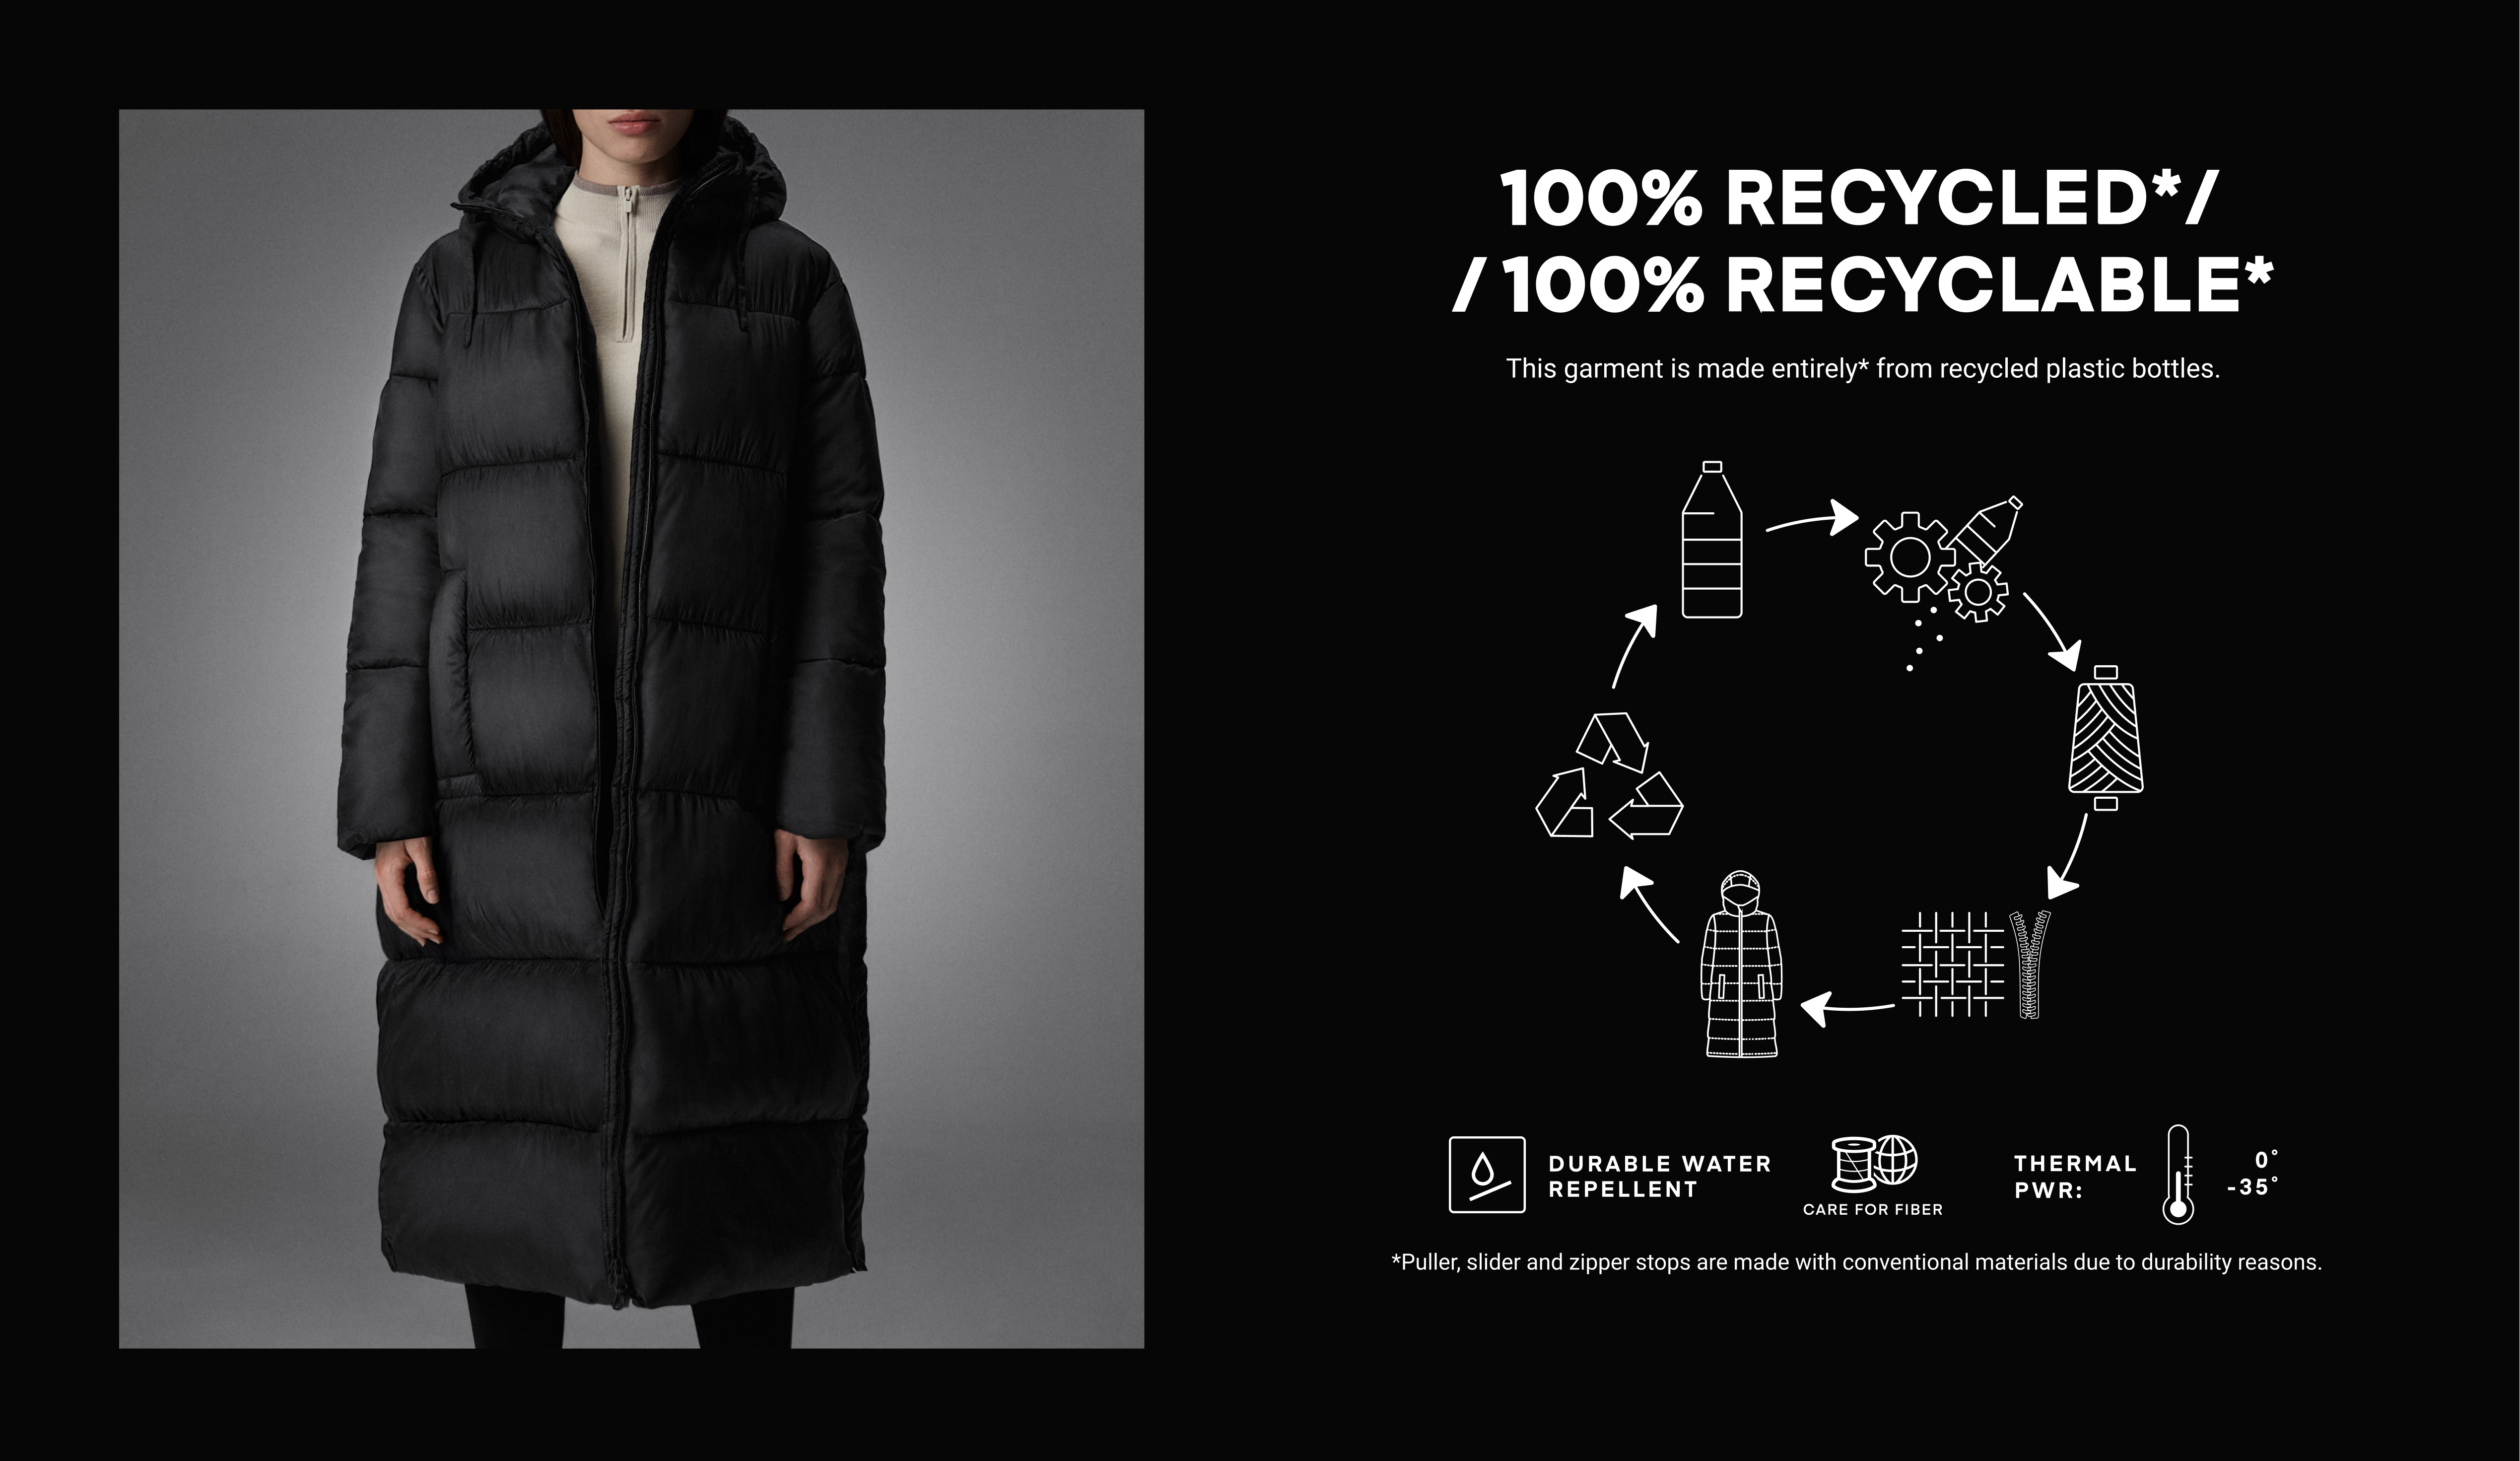 Φουσκωτό παλτό από 100% ανακυκλωμένο και 100% ανακυκλώσιμο υλικό